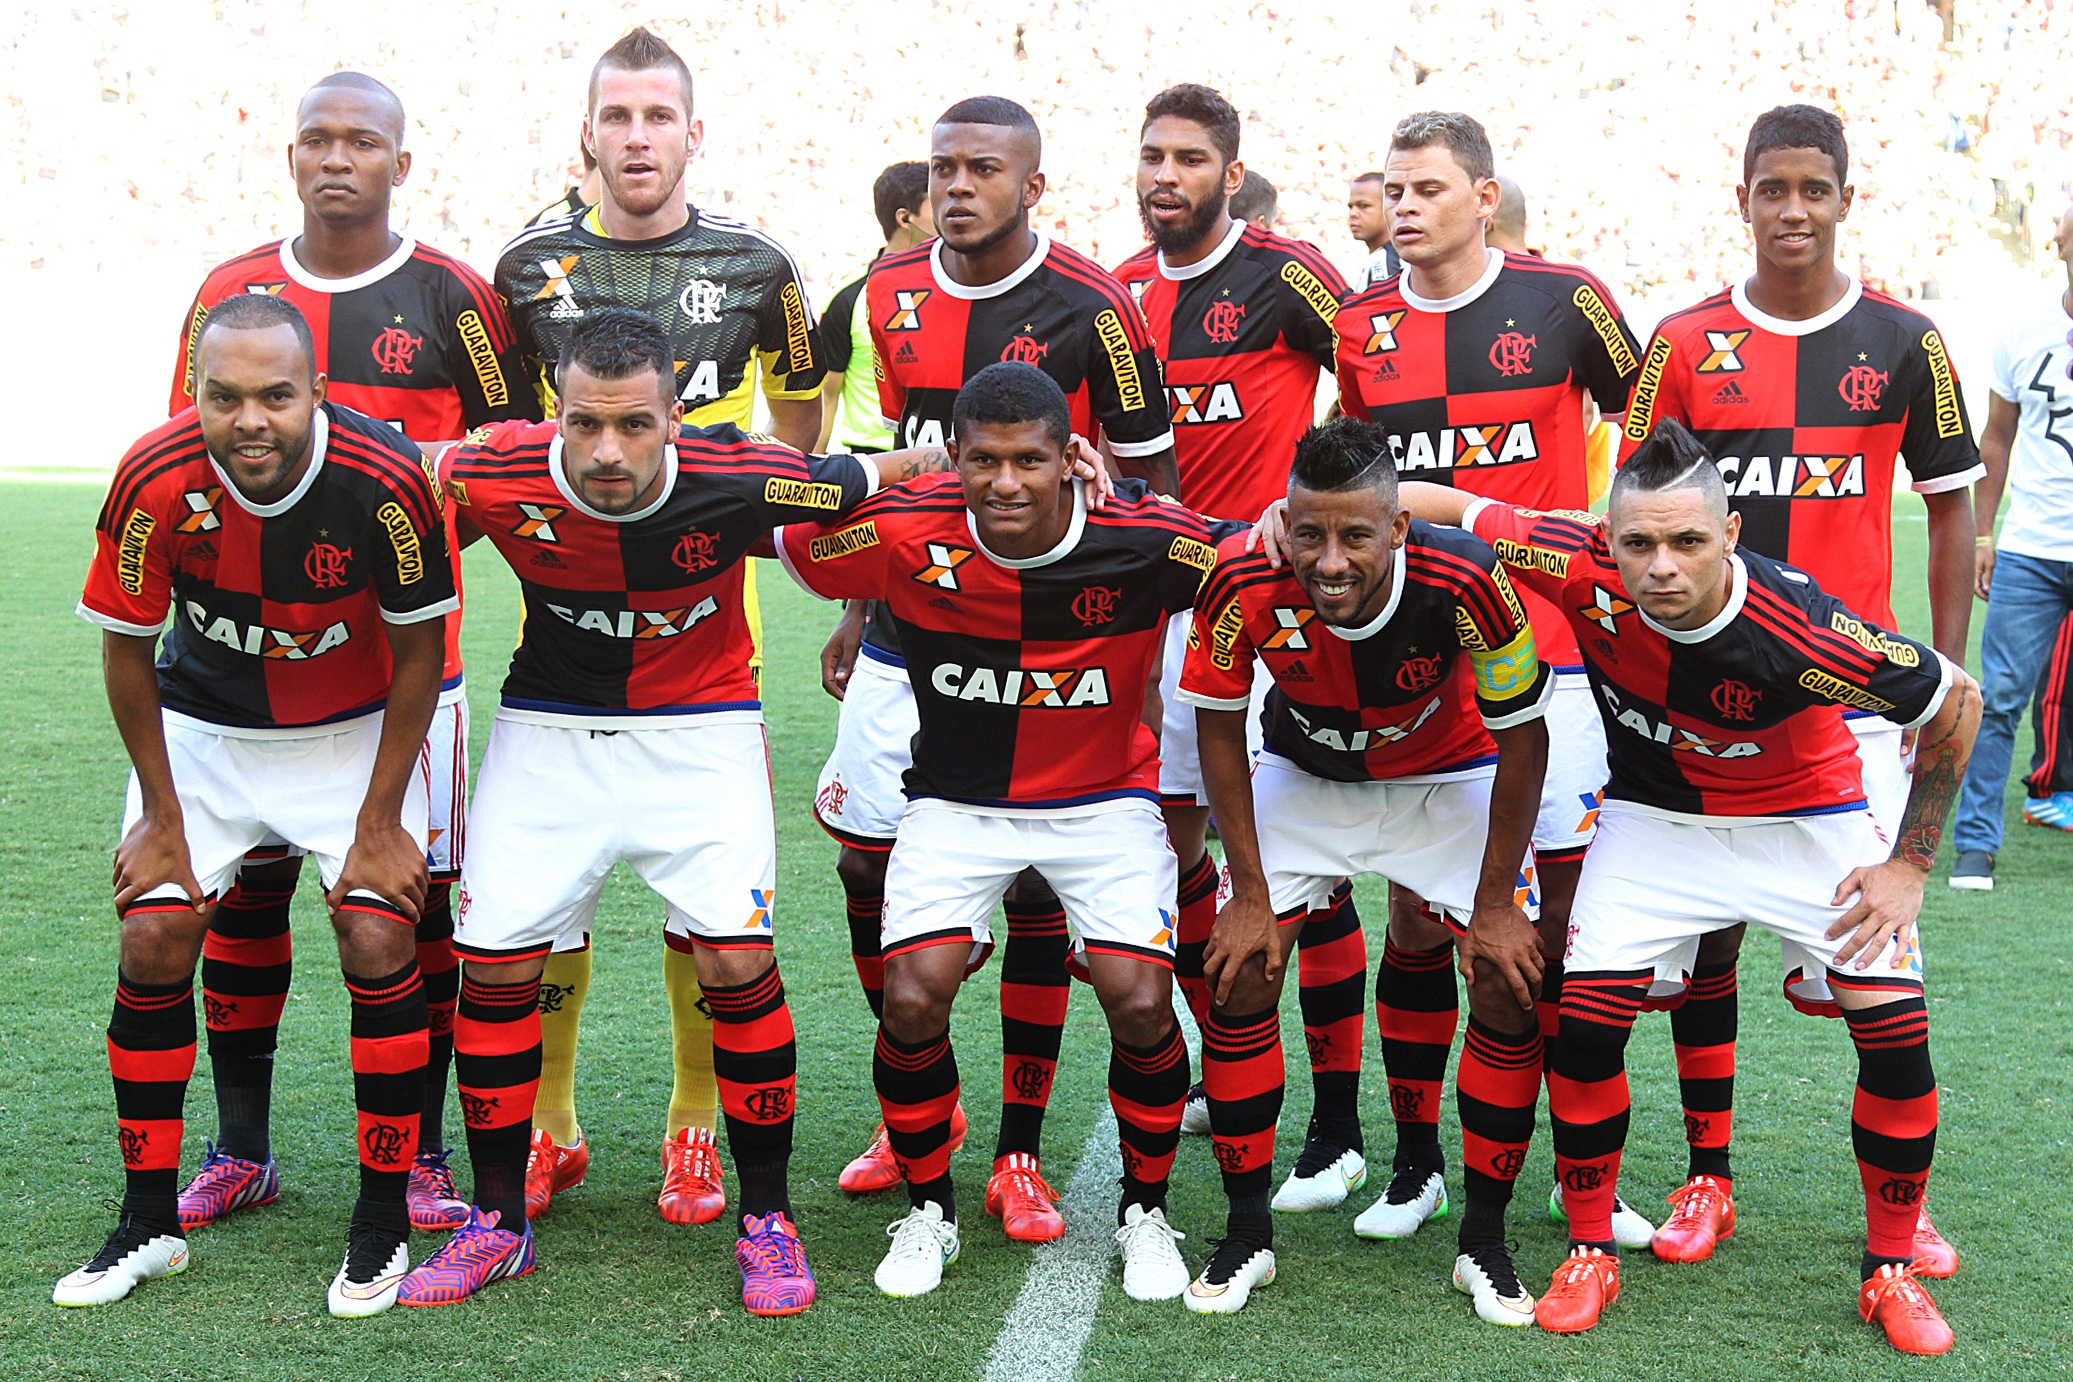 C.R.Flamengo 0 x 1 Botafogo (RJ) - 01/03/2015 - Campeonato Estadual